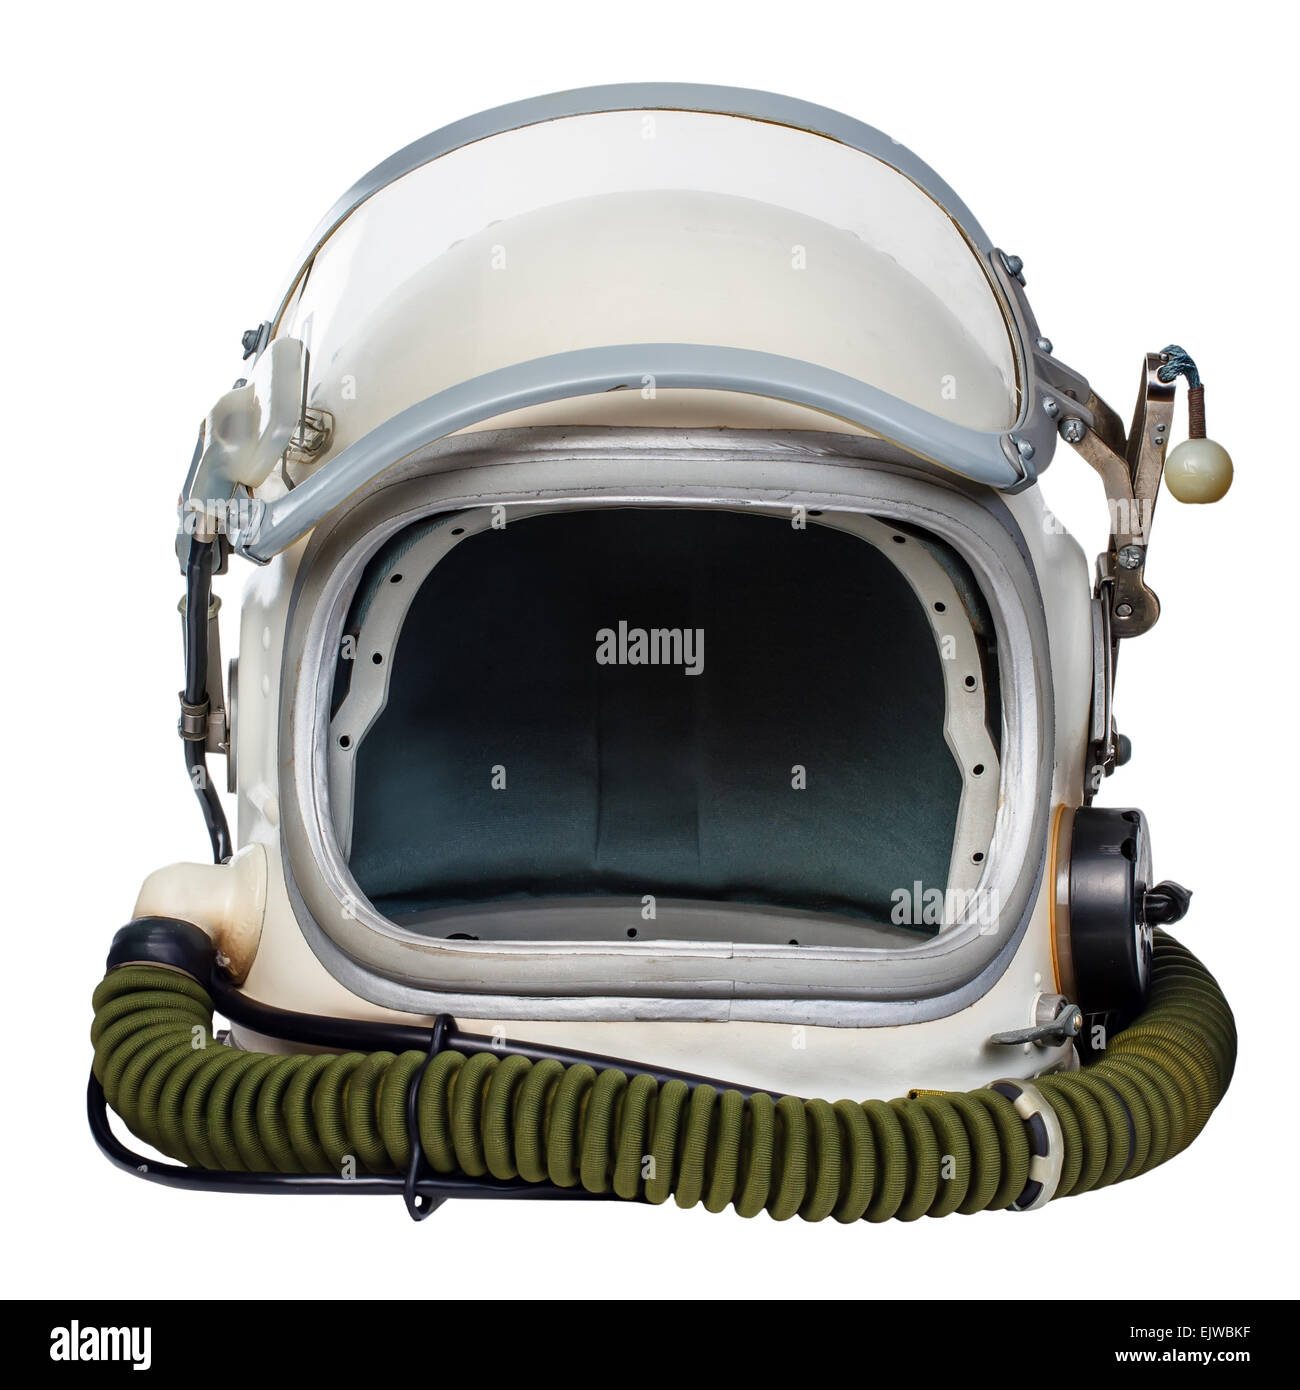 Vintage astronaut helmet Stock Photo - Alamy